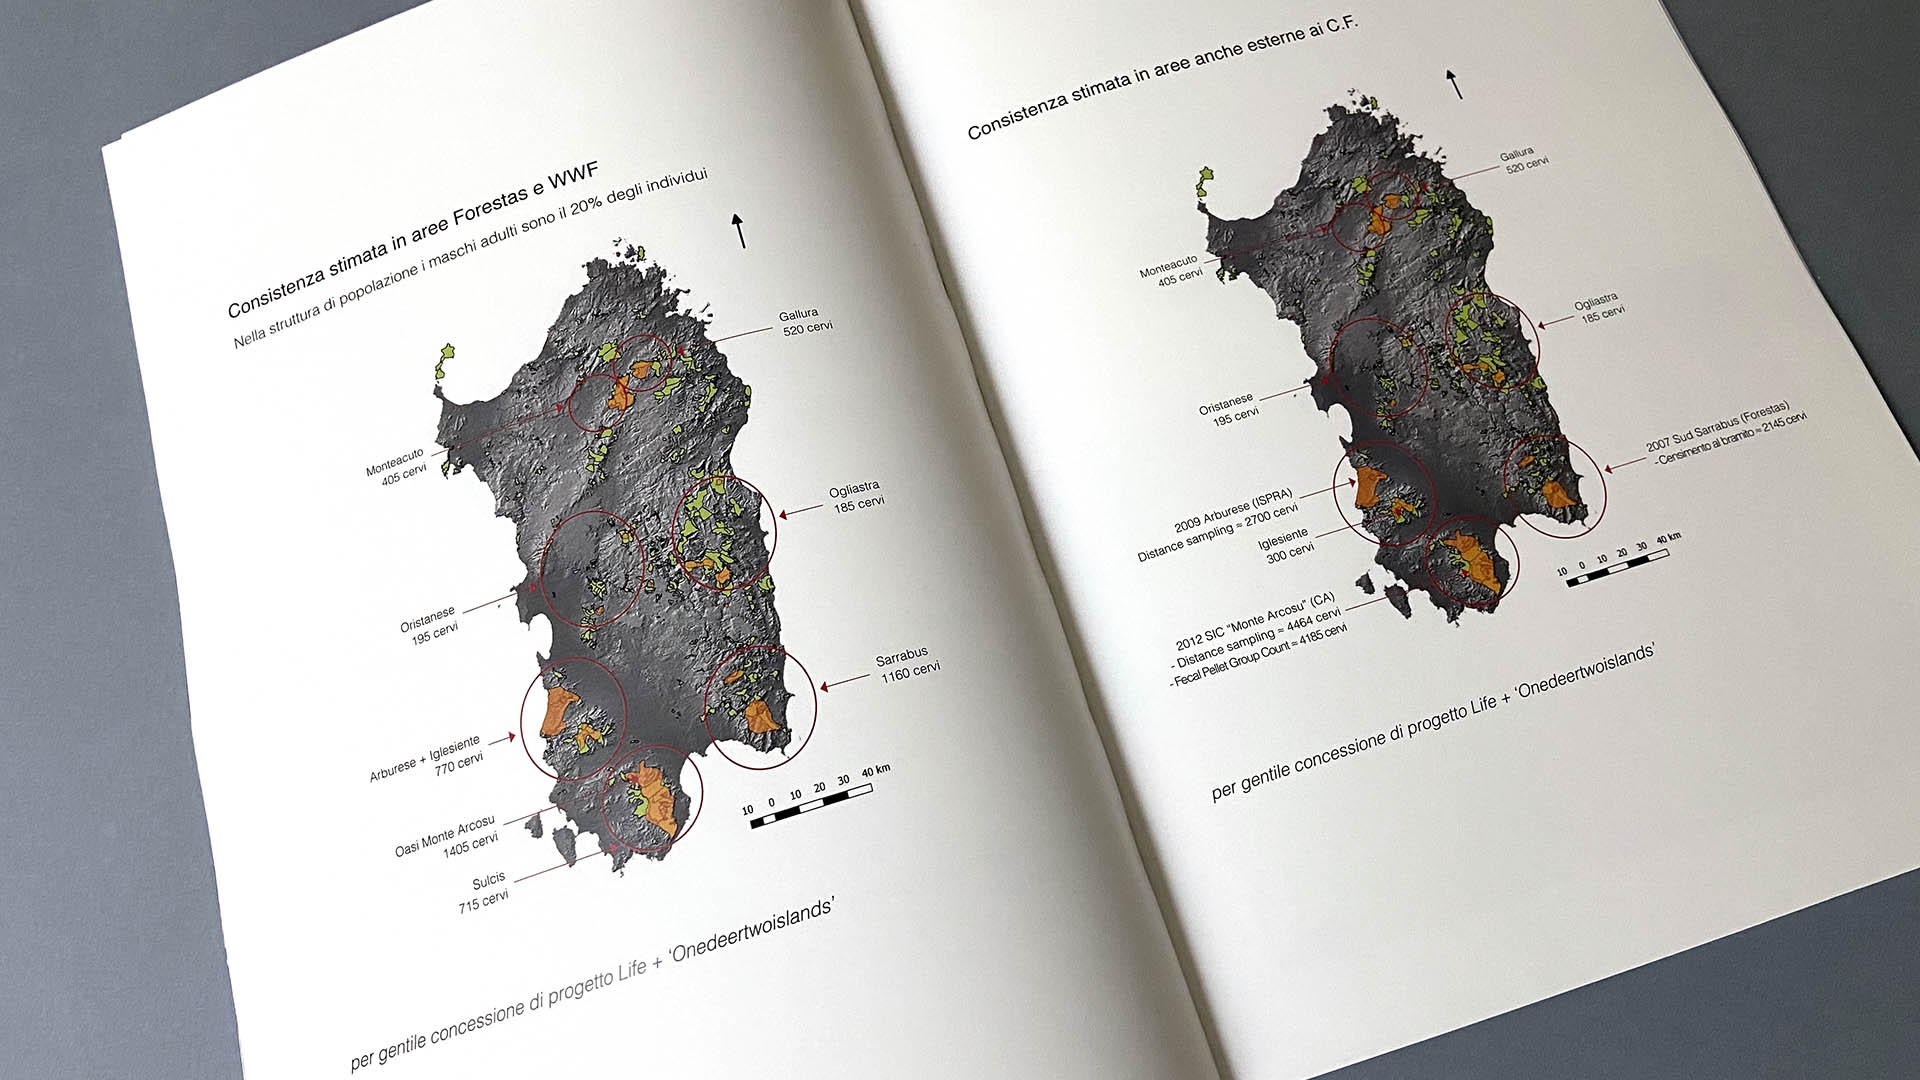 Nella pubblicazione  presente la cartografia elaborata dal progetto Life + One deer two islands